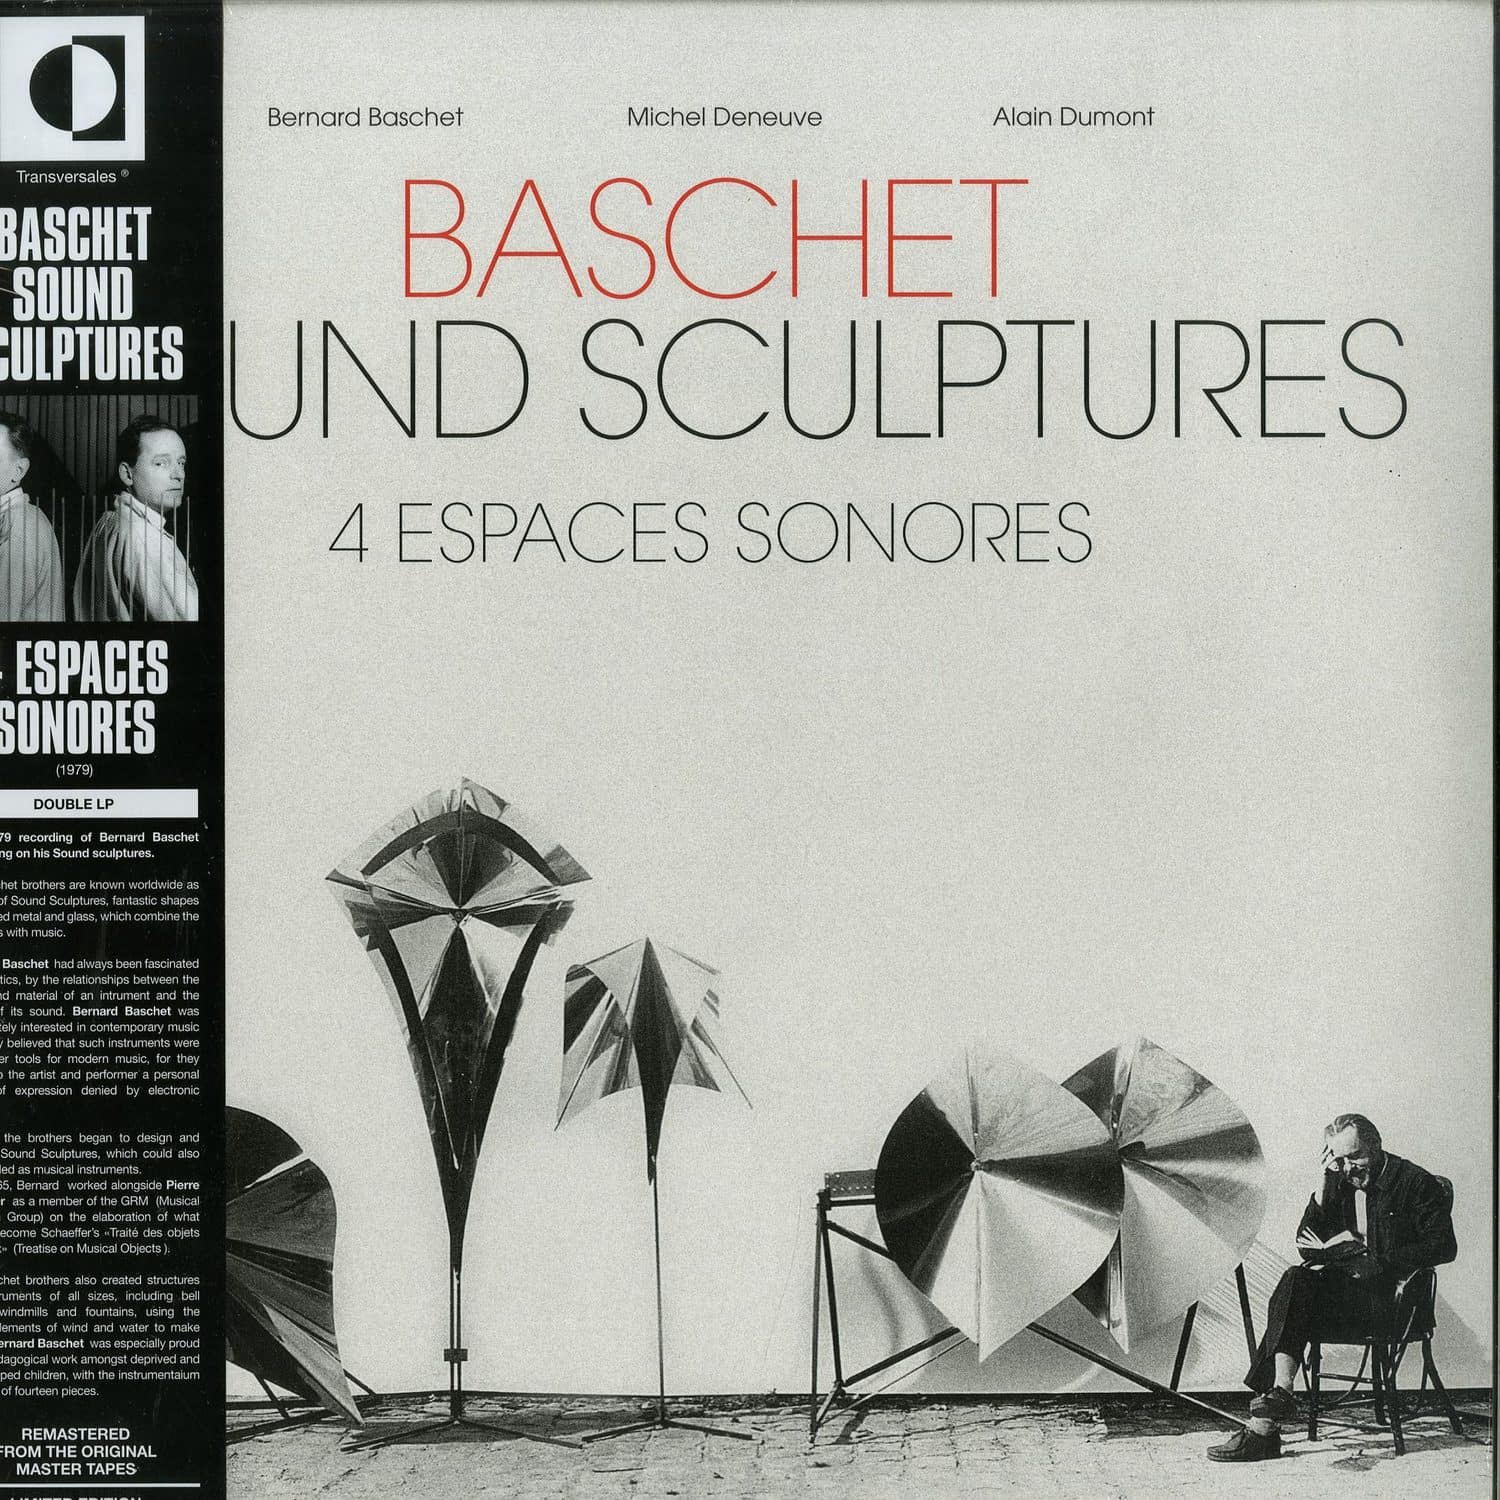 Bernard Braschet & Michel Deneuve - 4 ESPACES SONORES 